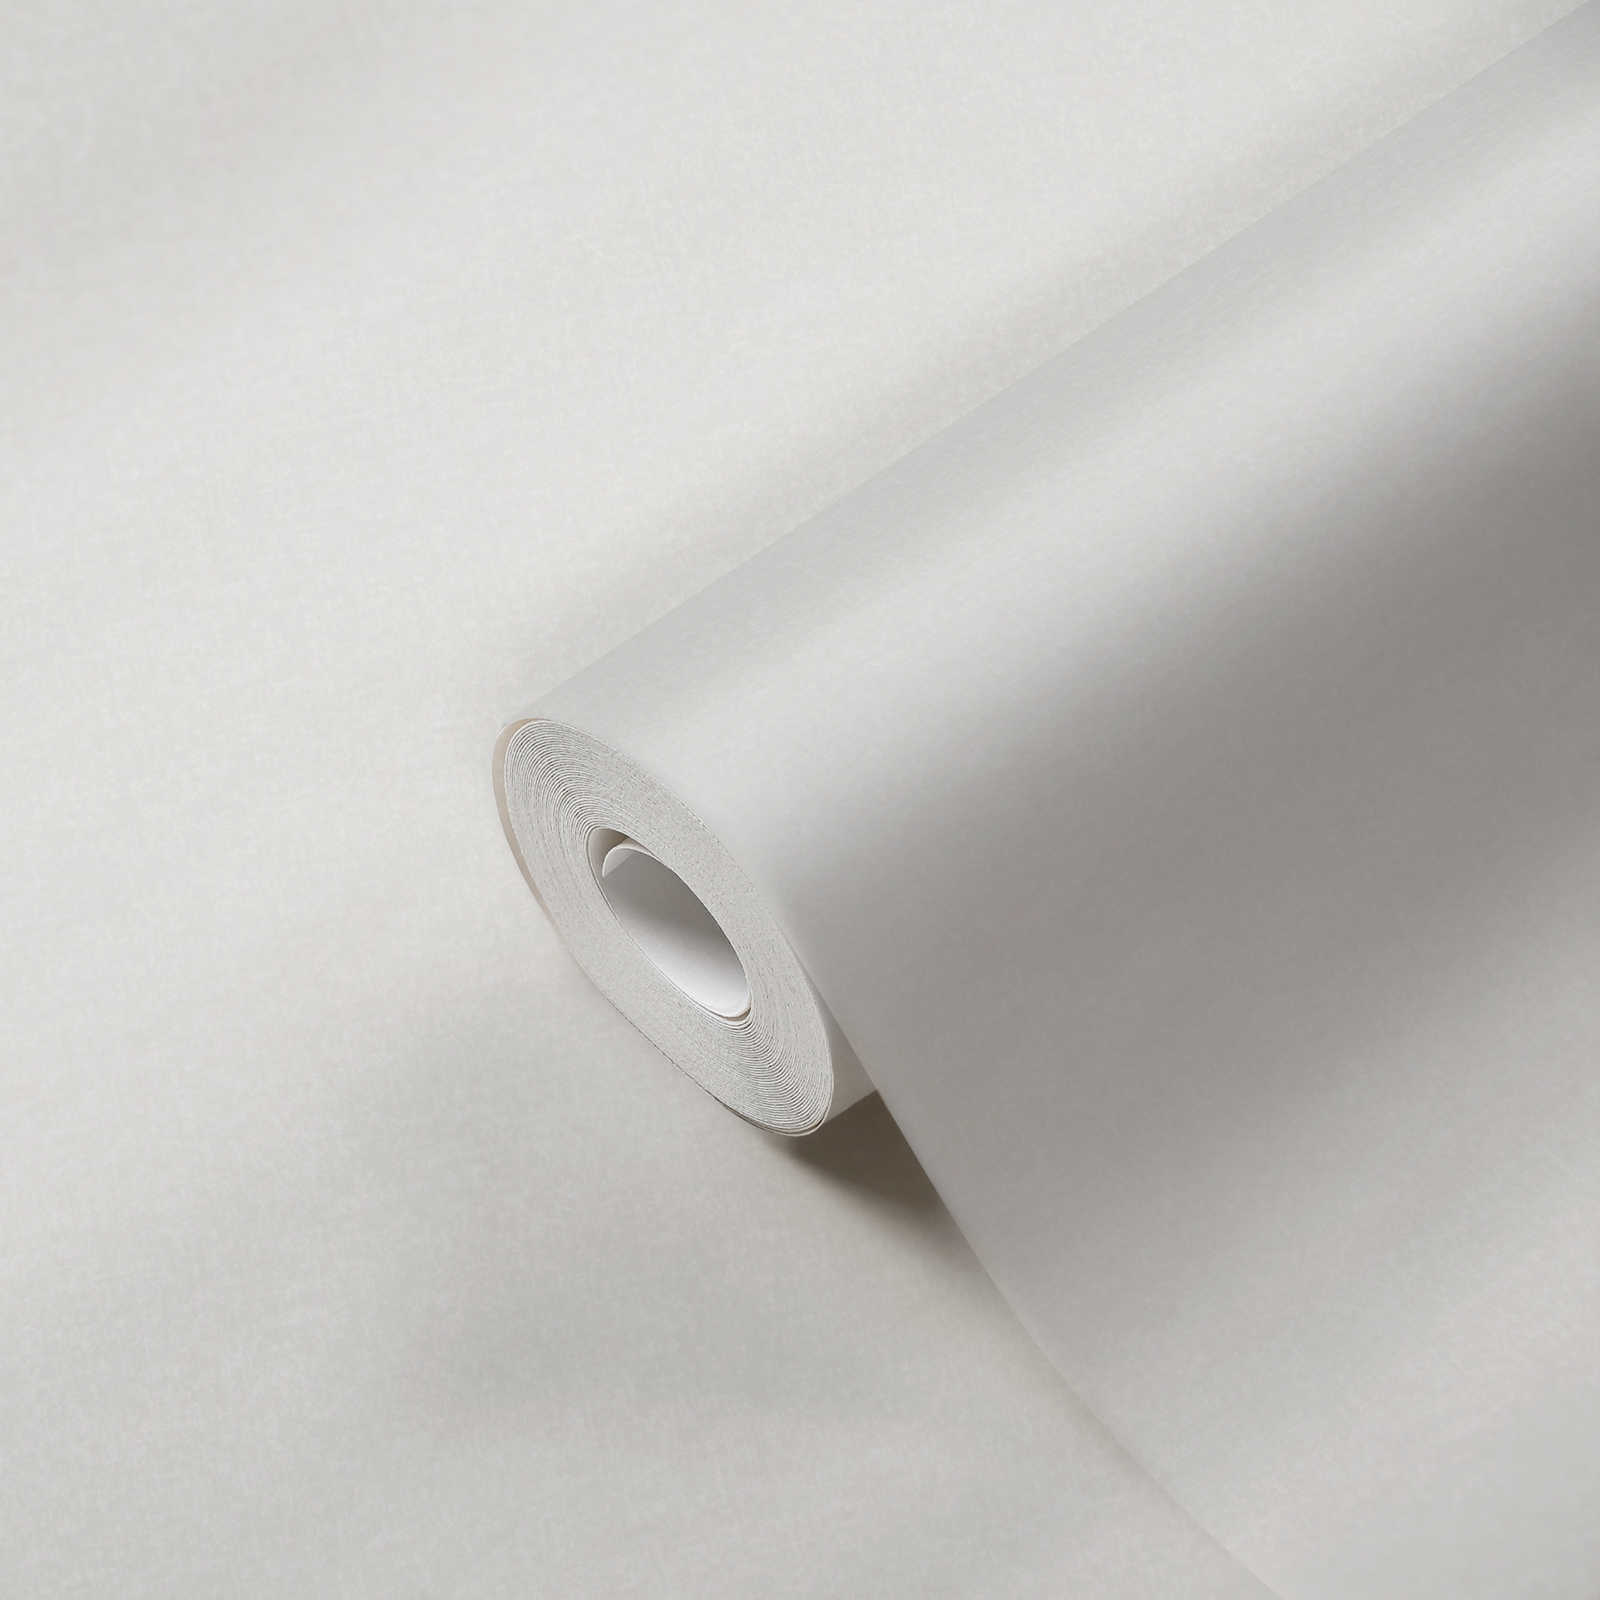             Papier peint uni structuré couleurs neutres - blanc
        